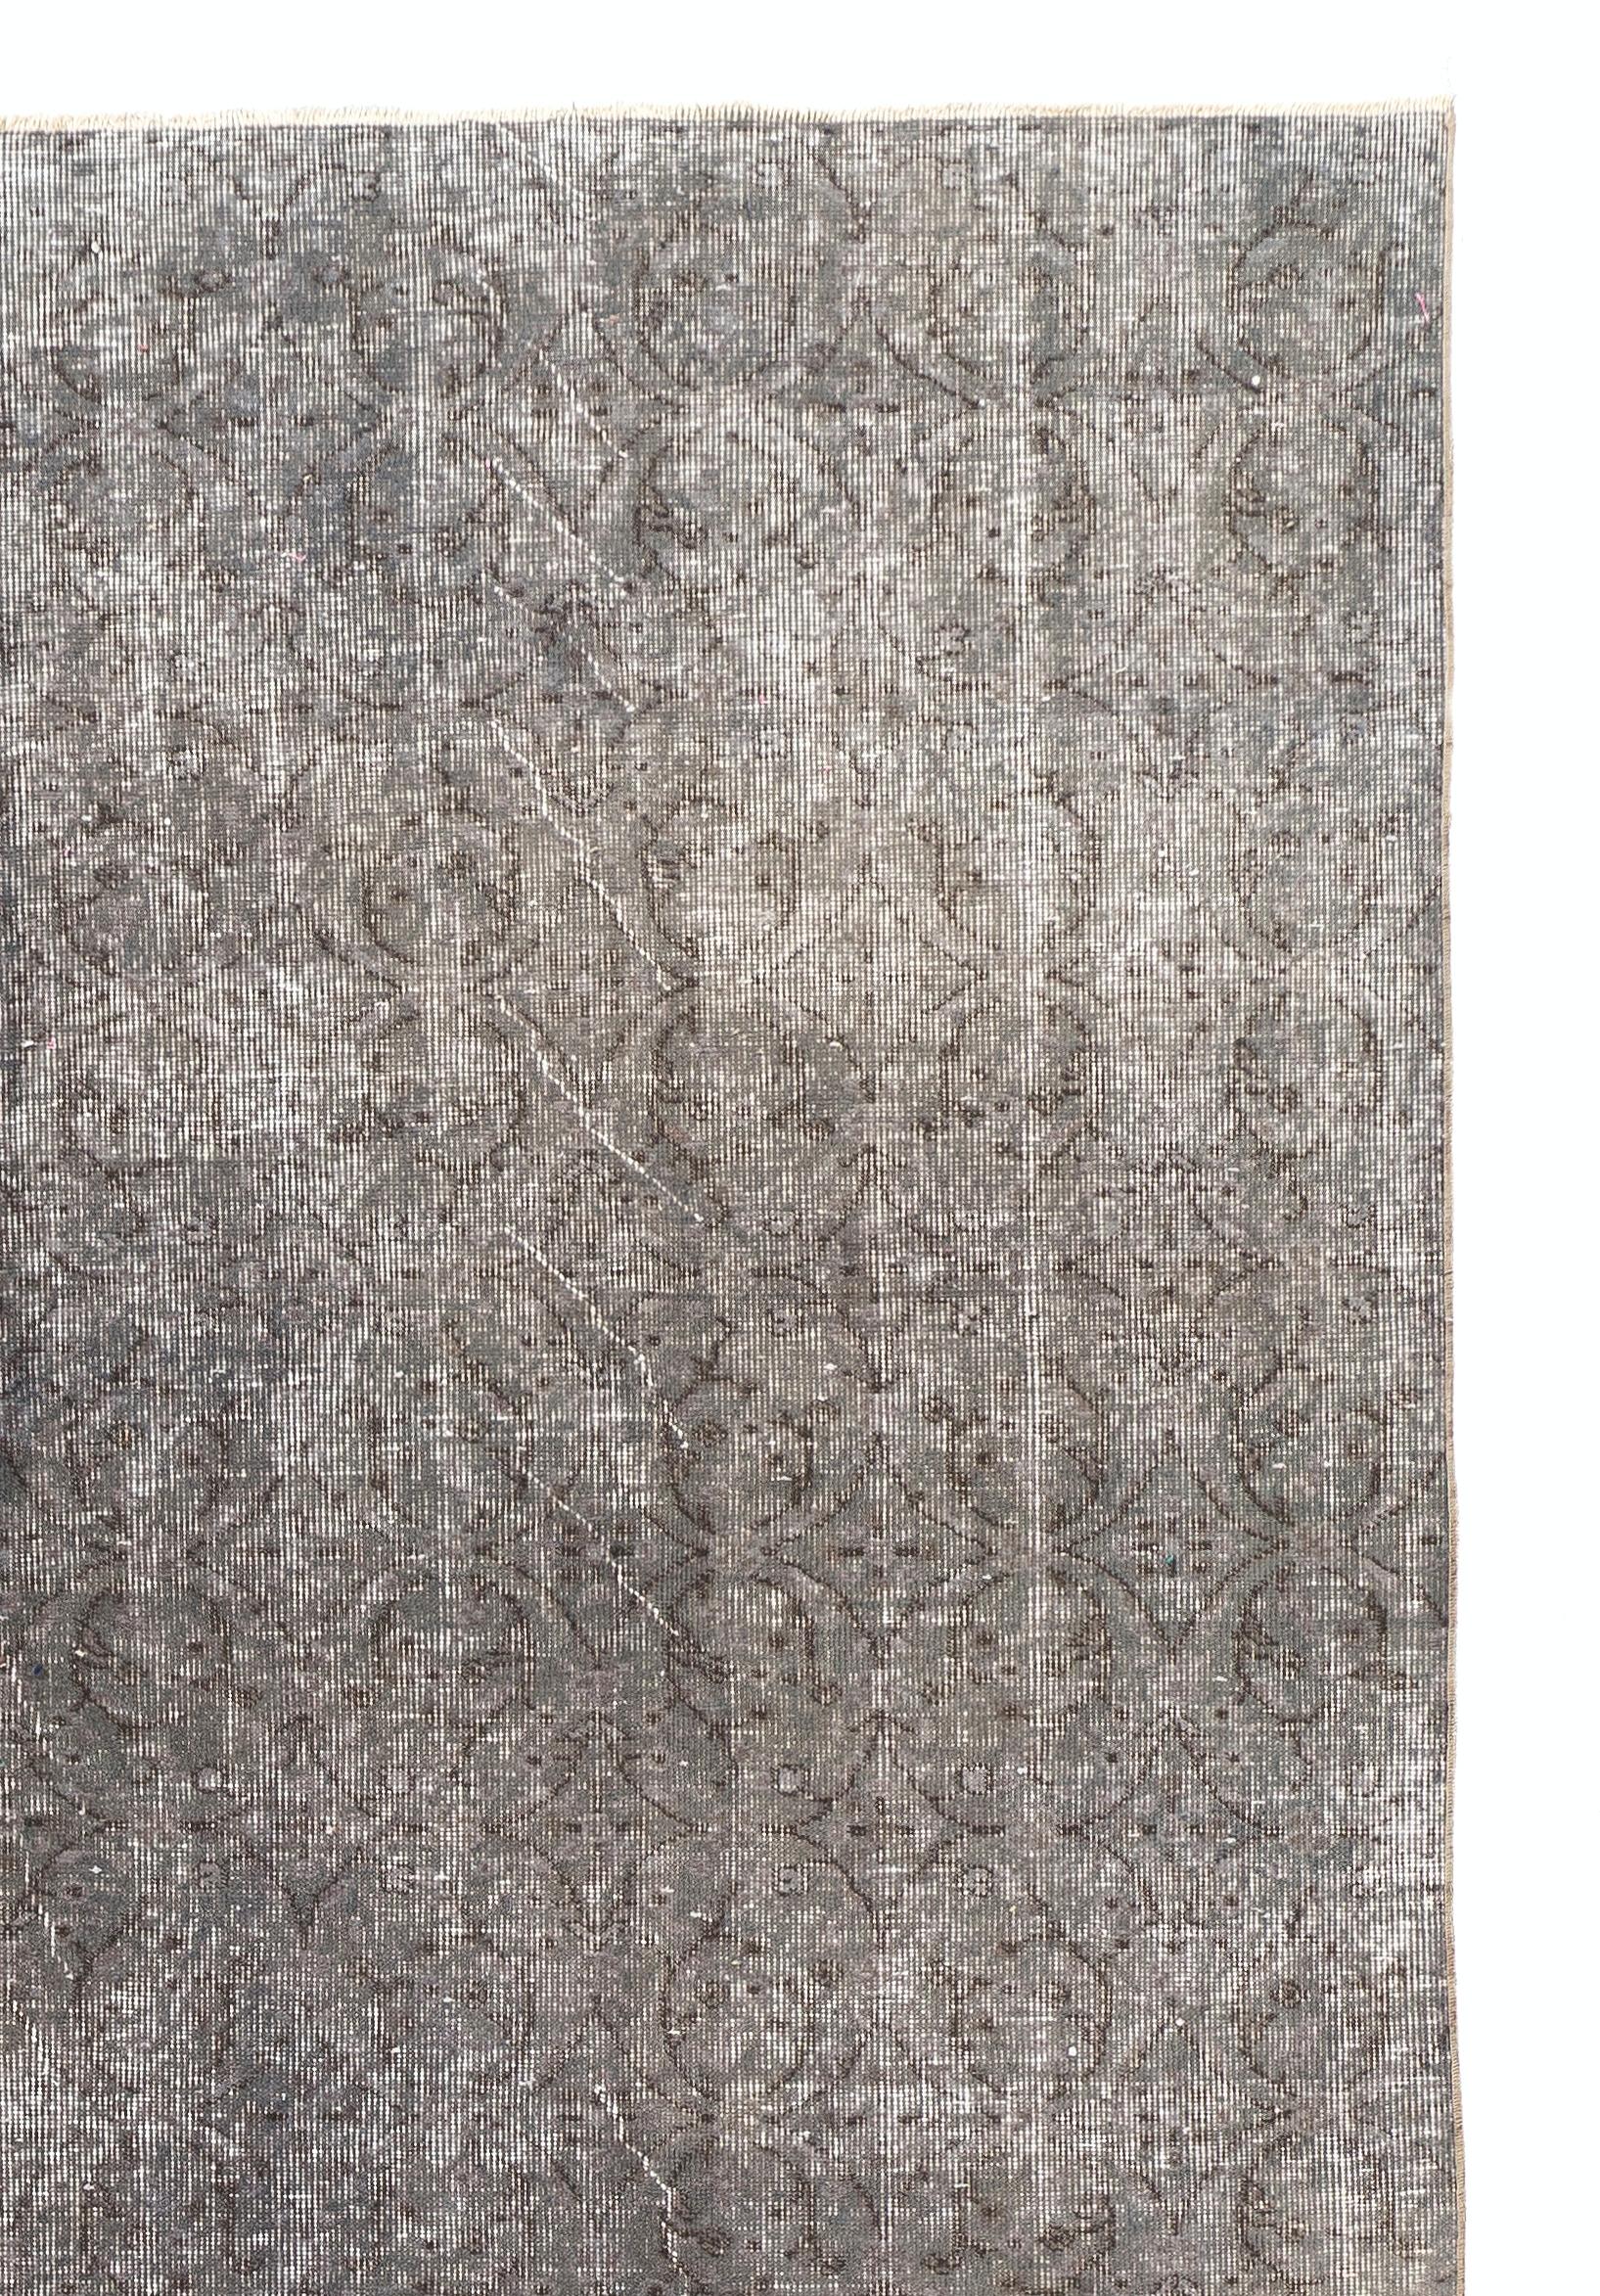 vintage rug 7x10